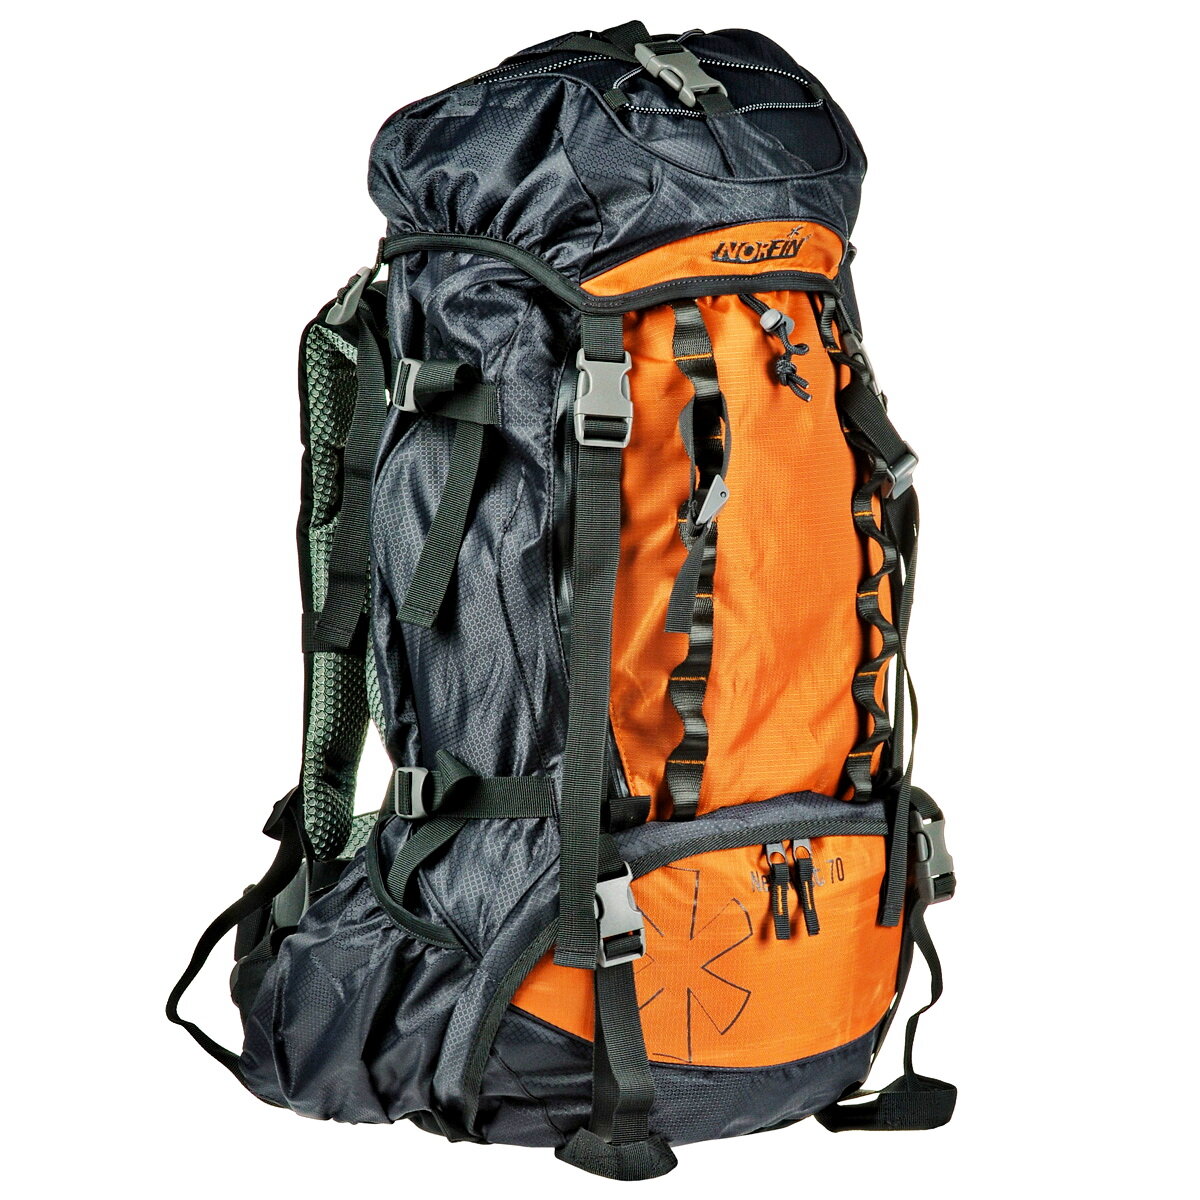  Одним из важных преимуществ этого рюкзака является его поясной ремень. Он позволяет вам распределить вес равномерно, снимая нагрузку с плеч и спины.